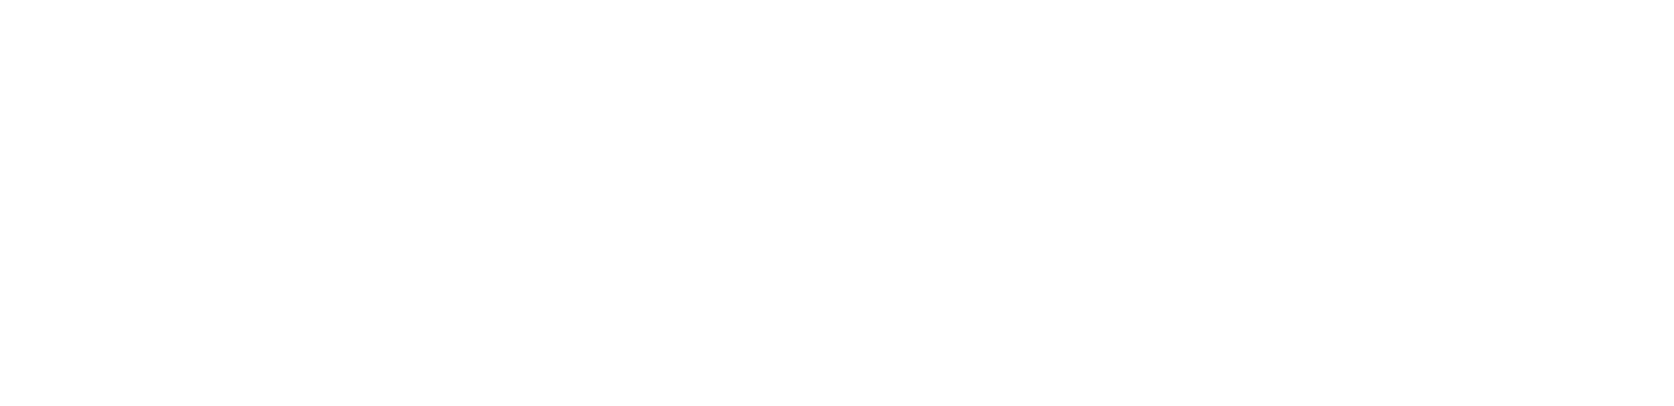 Palantir logo large for dark backgrounds (transparent PNG)